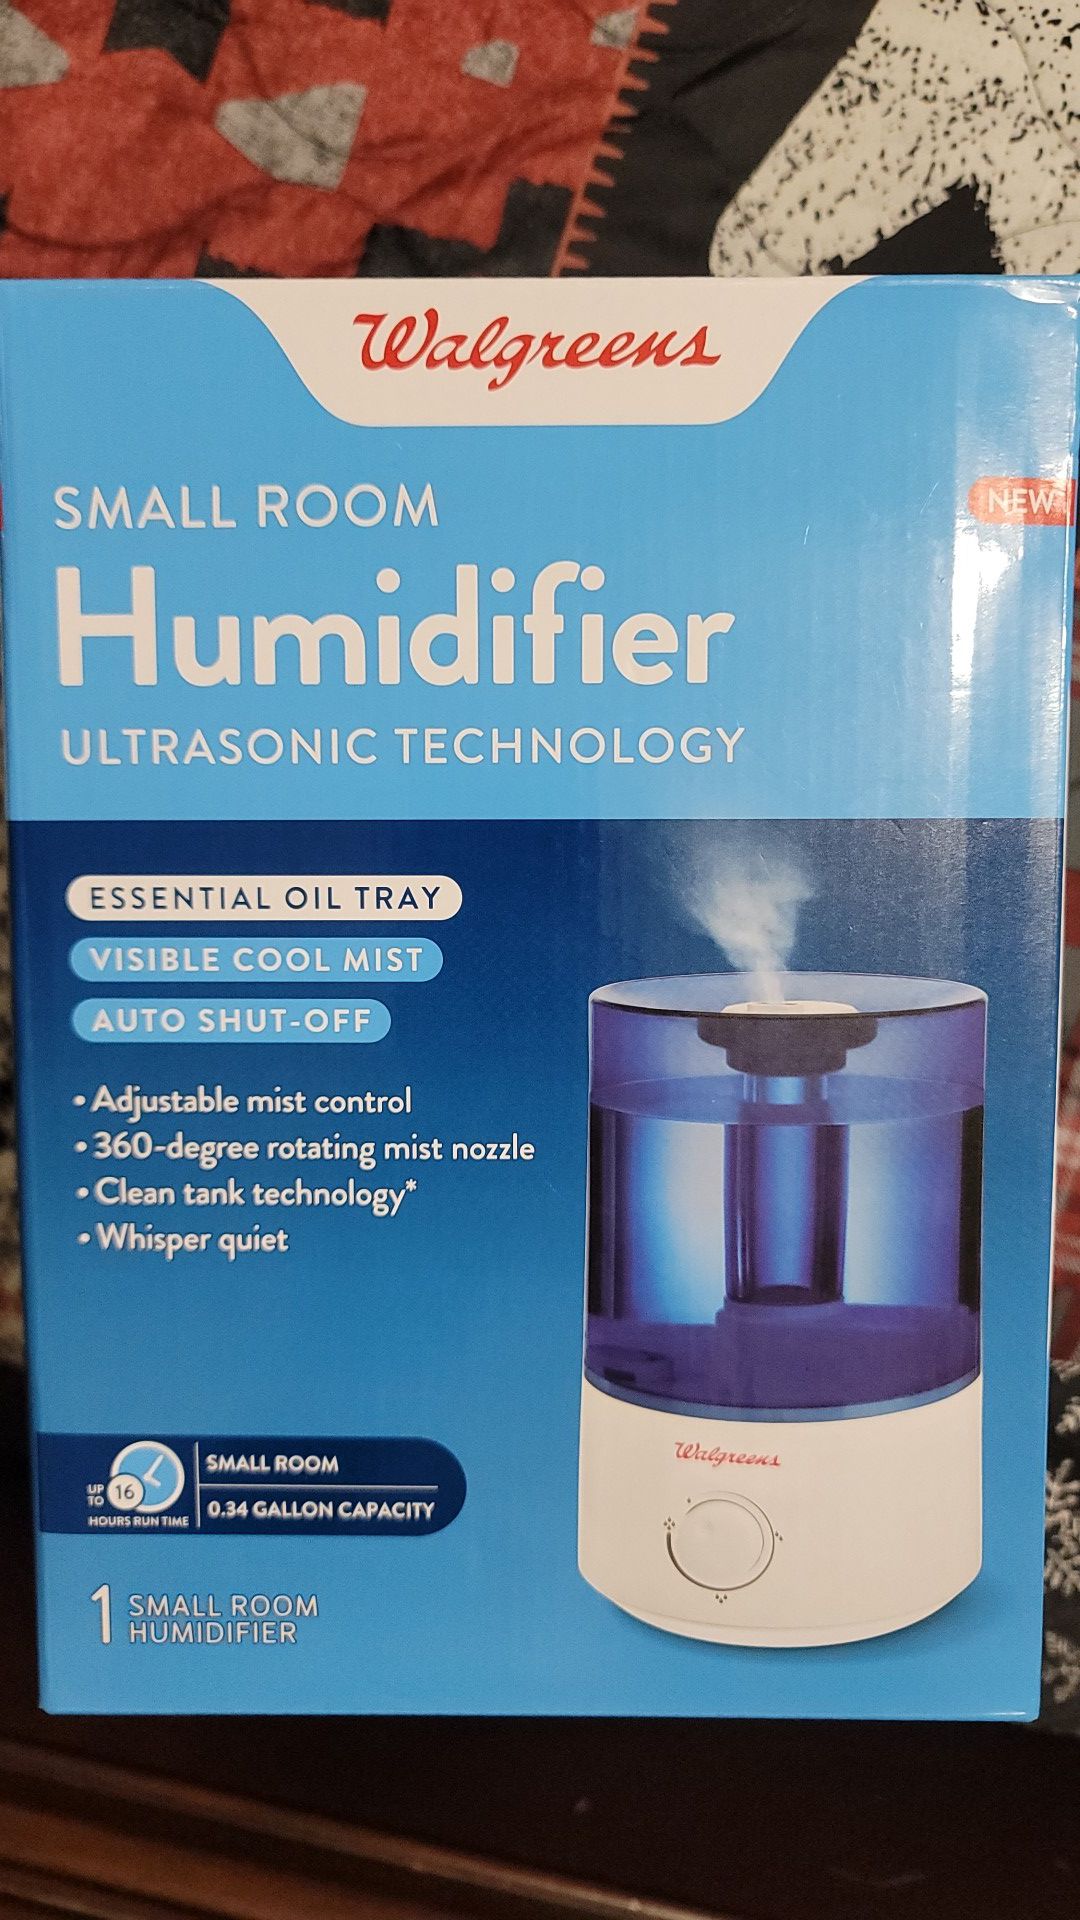 Small Room Humidifier